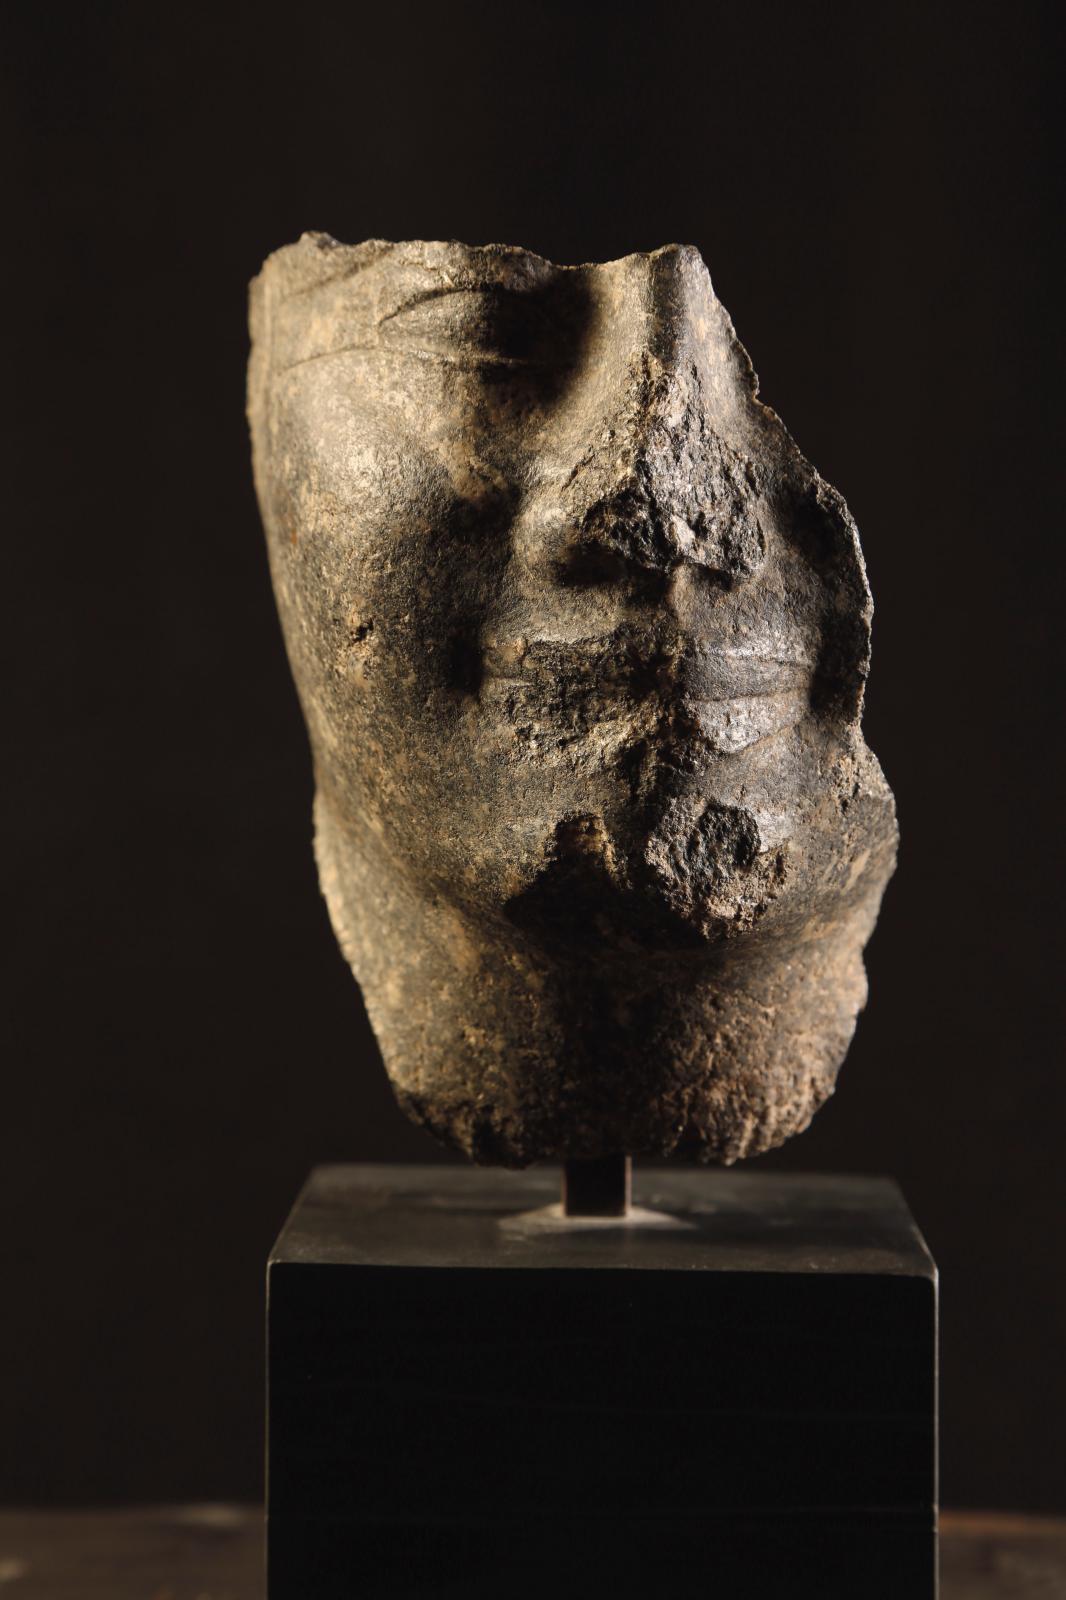 Égypte, Moyen Empire, XIIe dynastie, règne de Senousert Ier, 1971-1926 av. J.-C. Fragment de tête du pharaon Senousert Ier, granit noir, 1